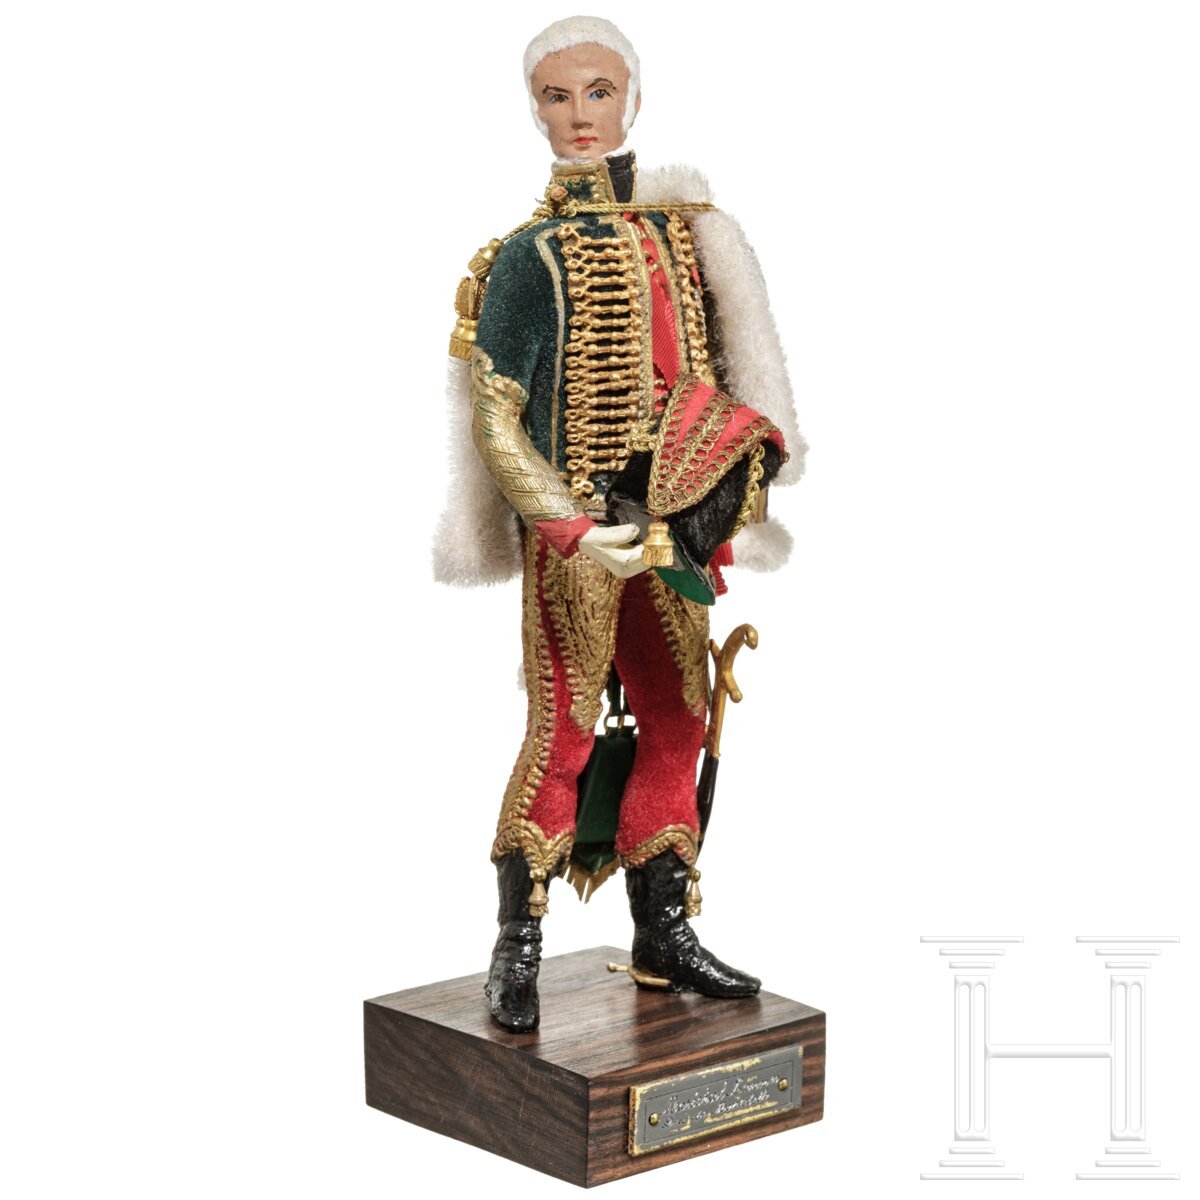 Marschall Lannes um 1805 - Uniformfigur von Marcel Riffet, 20. Jhdt. - Image 2 of 6